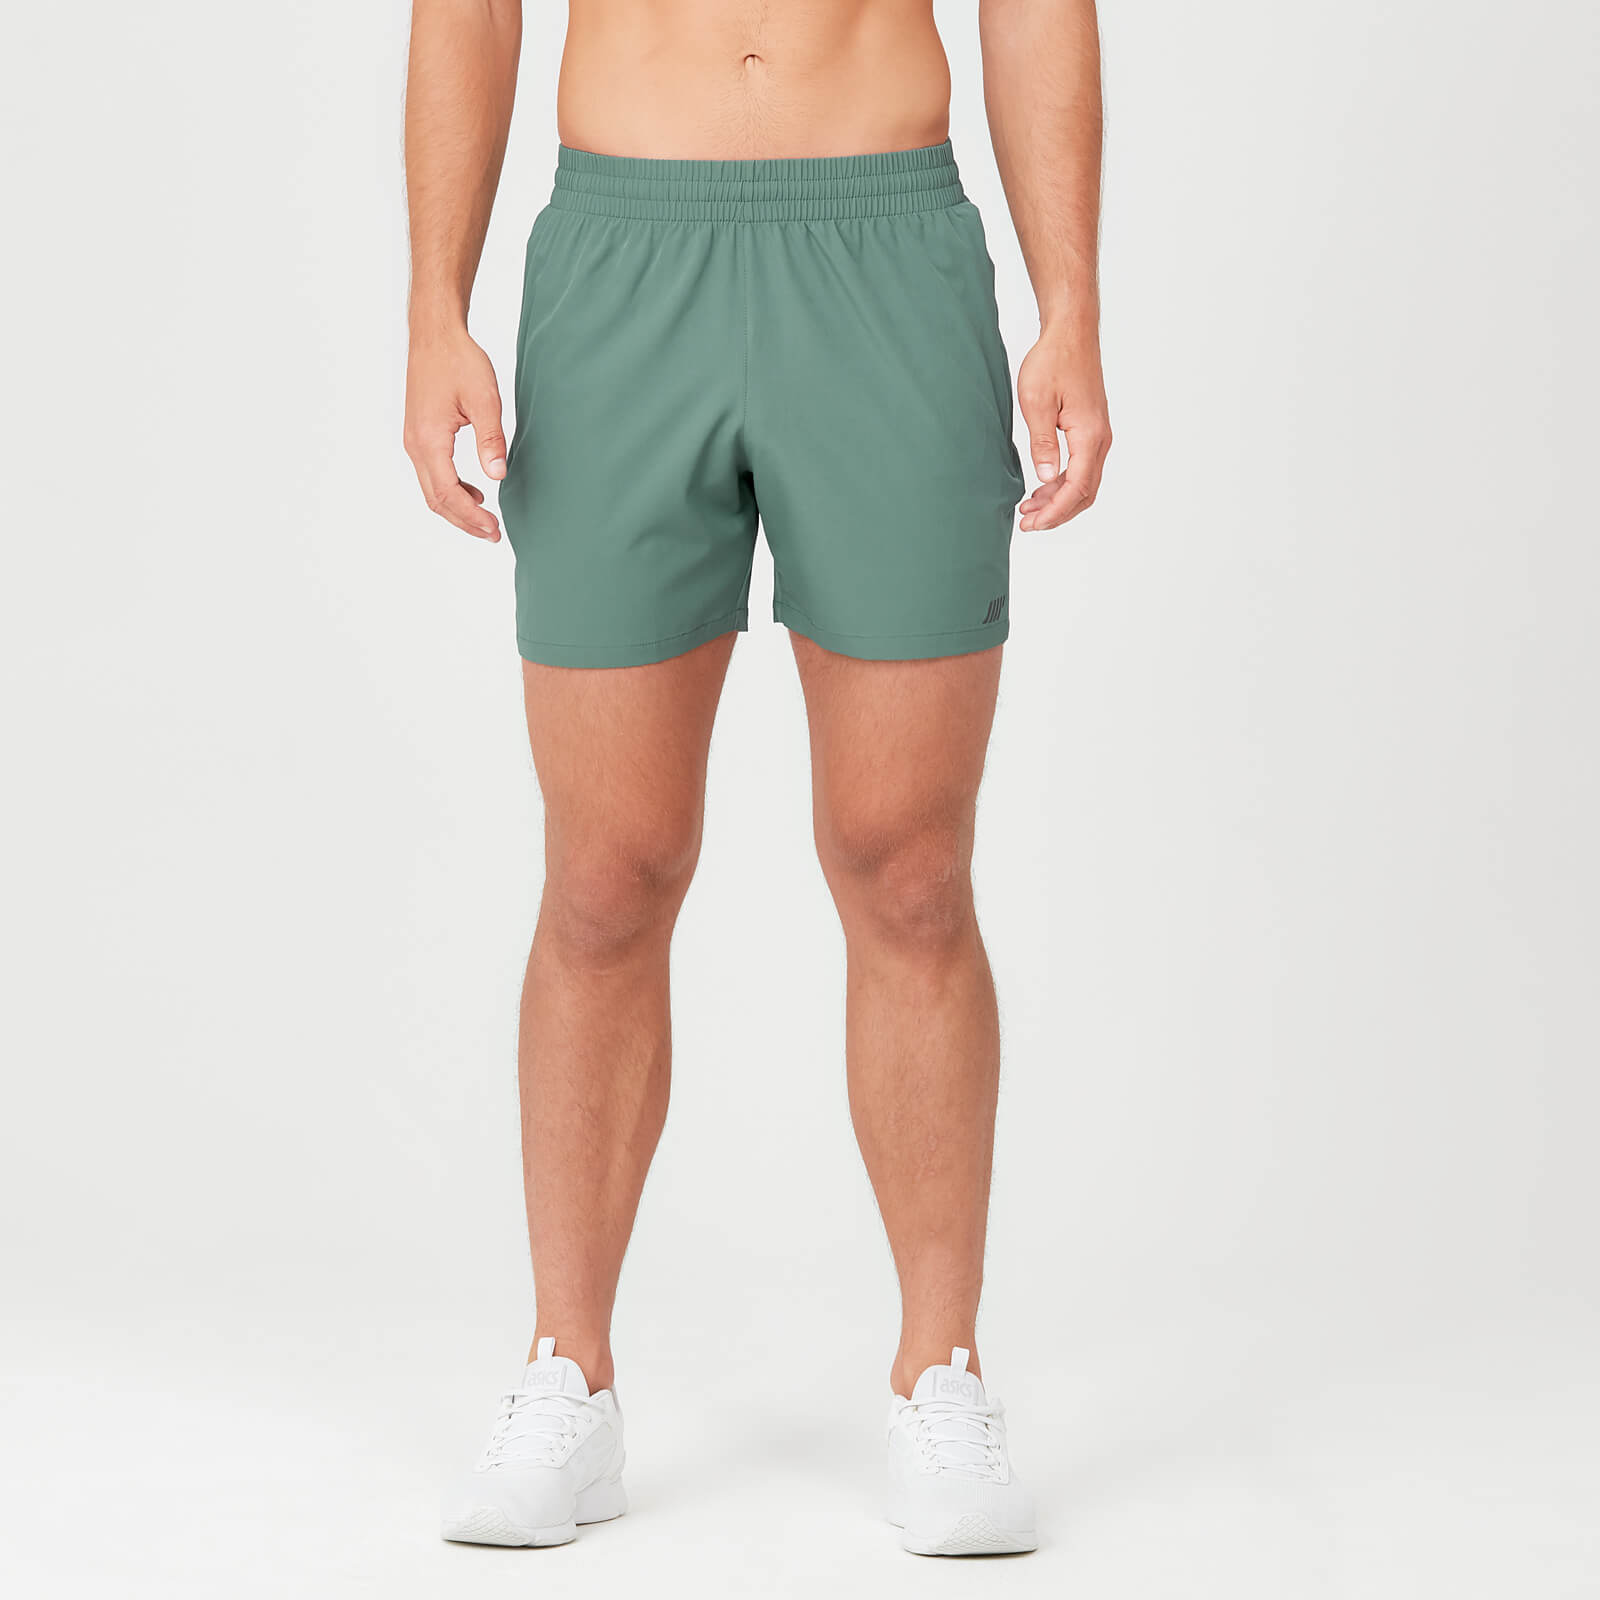 Sprint kratke hlače - Zelene - XS